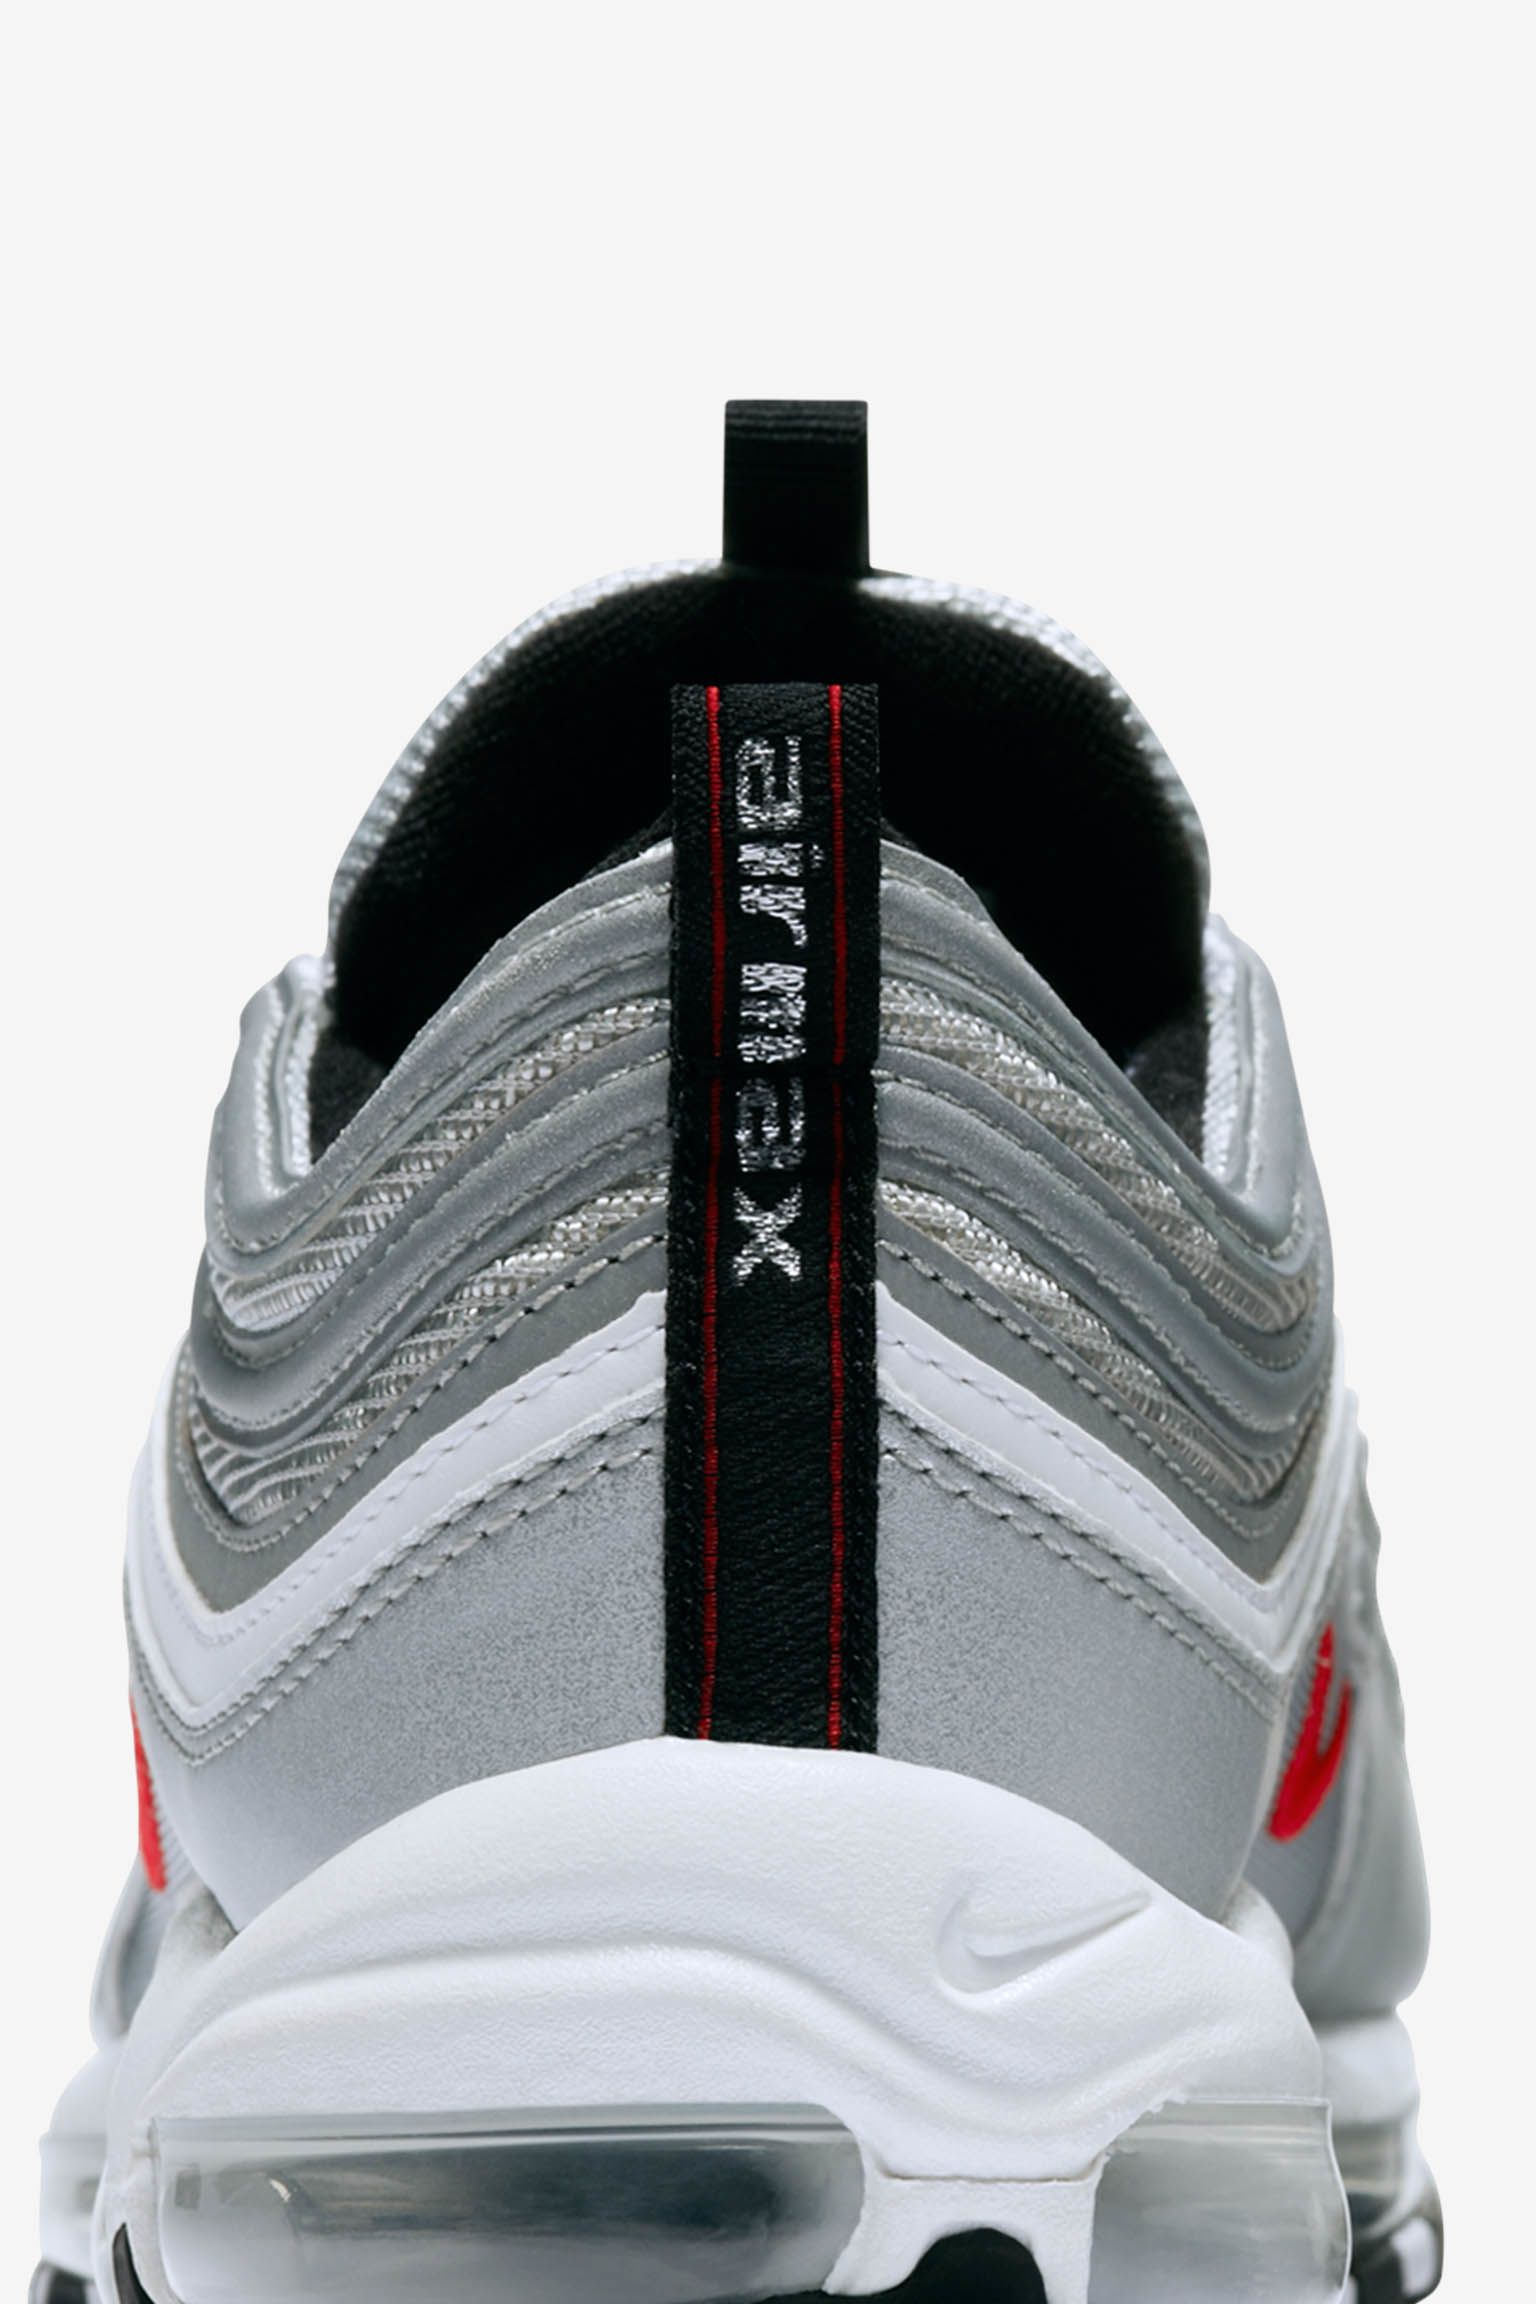 el estudio mecanismo comprador Nike Air Max 97 OG "Metallic Silver". Nike SNKRS ES